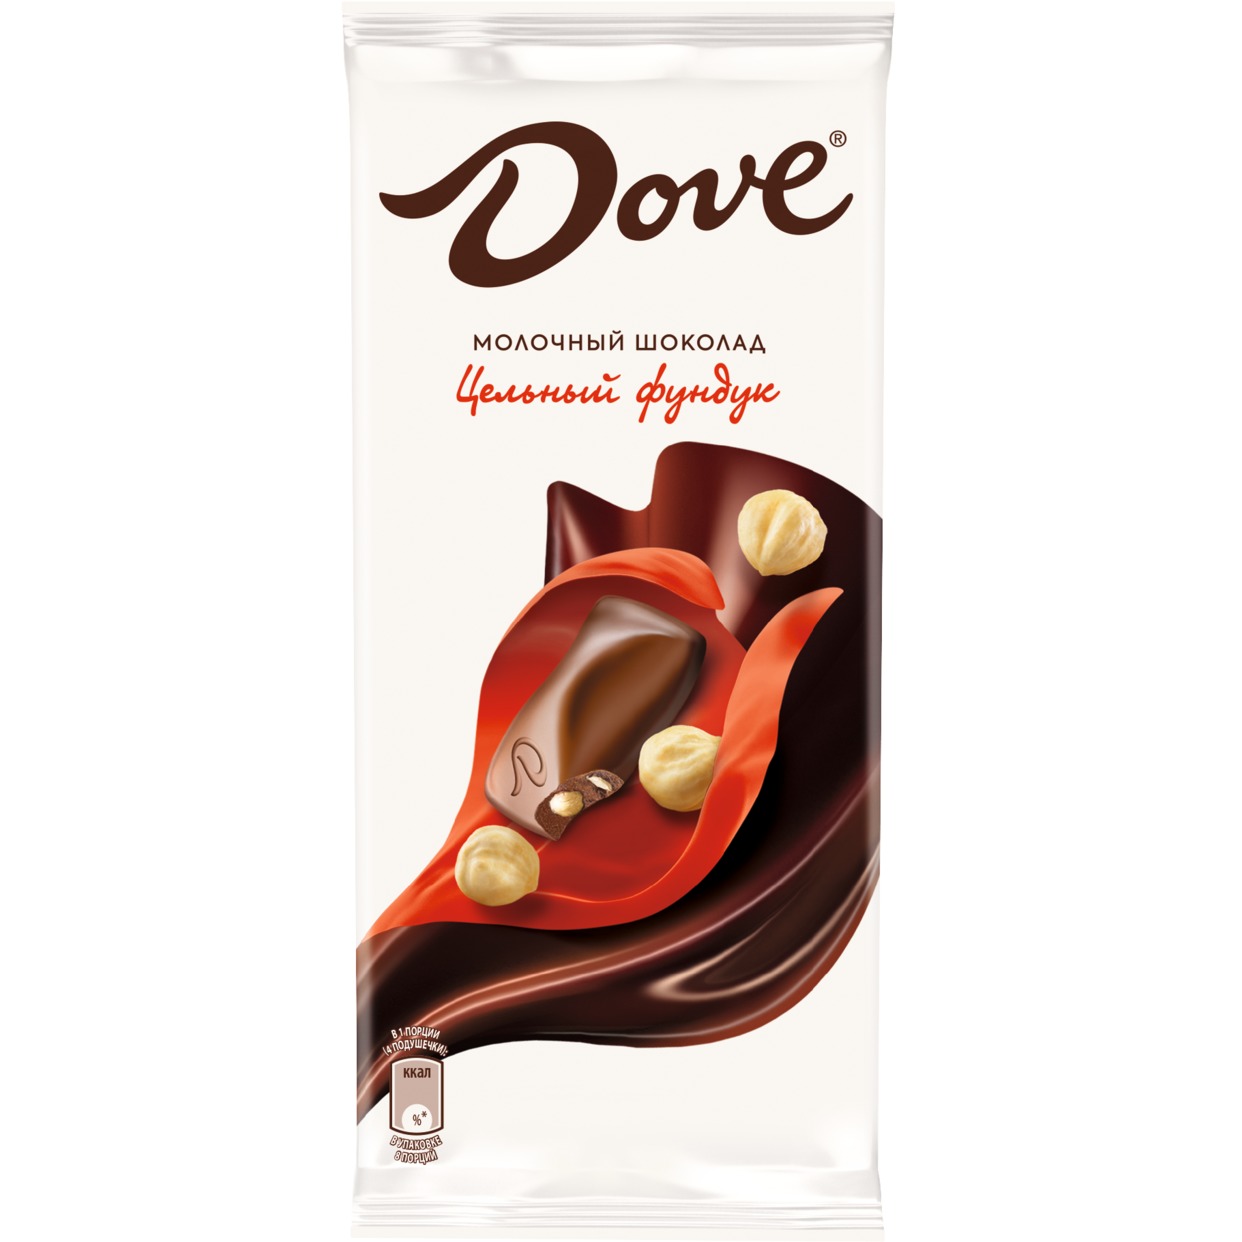 Шоколад Dove Молочный с Цельным Фундуком 90г по акции в Пятерочке